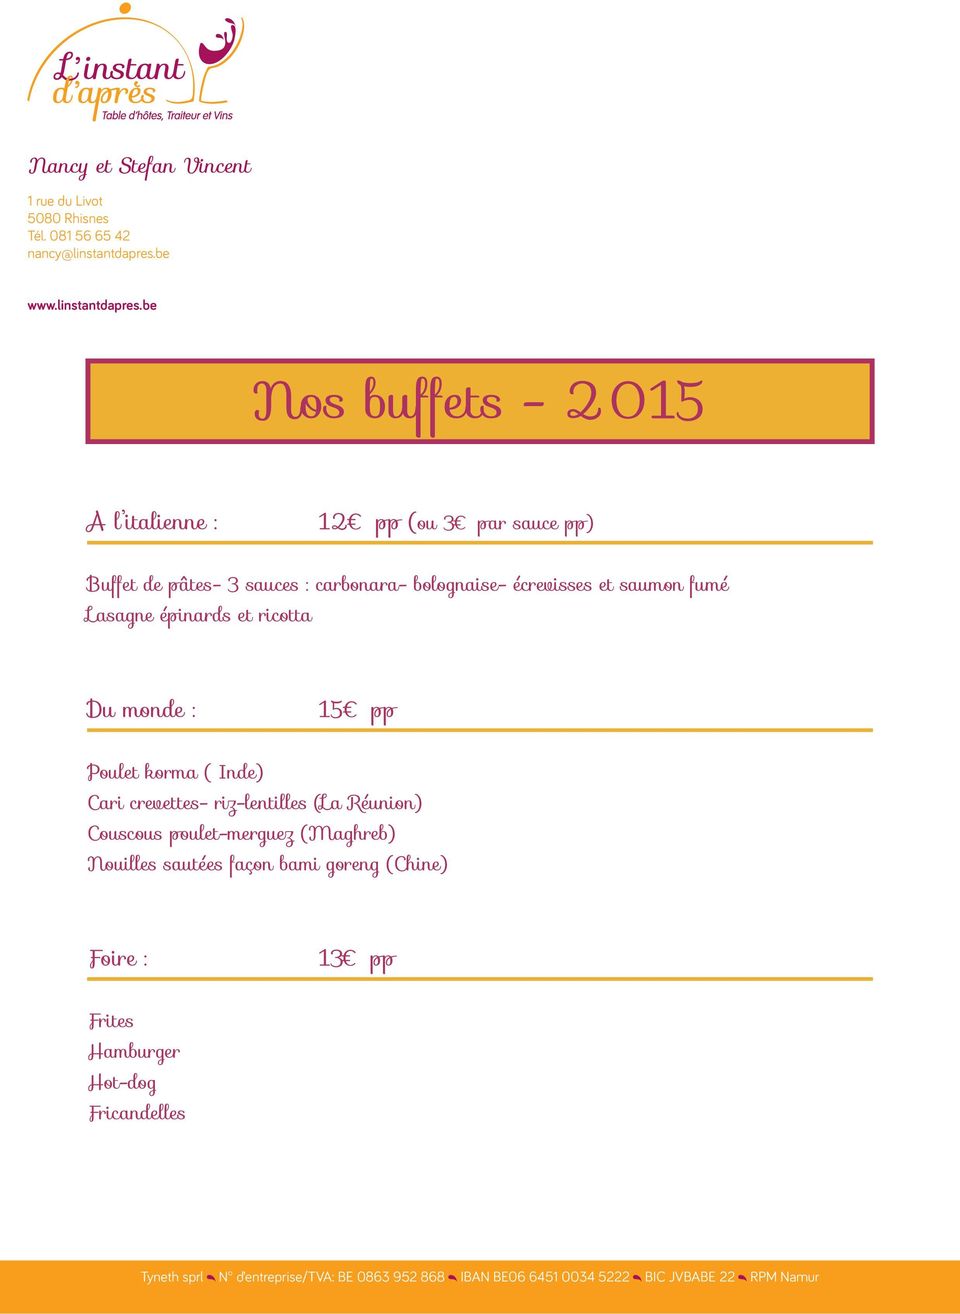 be Nos buffets - 2015 A l italienne : 12 pp (ou 3 par sauce pp) Buffet de pâtes- 3 sauces : carbonara- bolognaise- écrevisses et saumon fumé